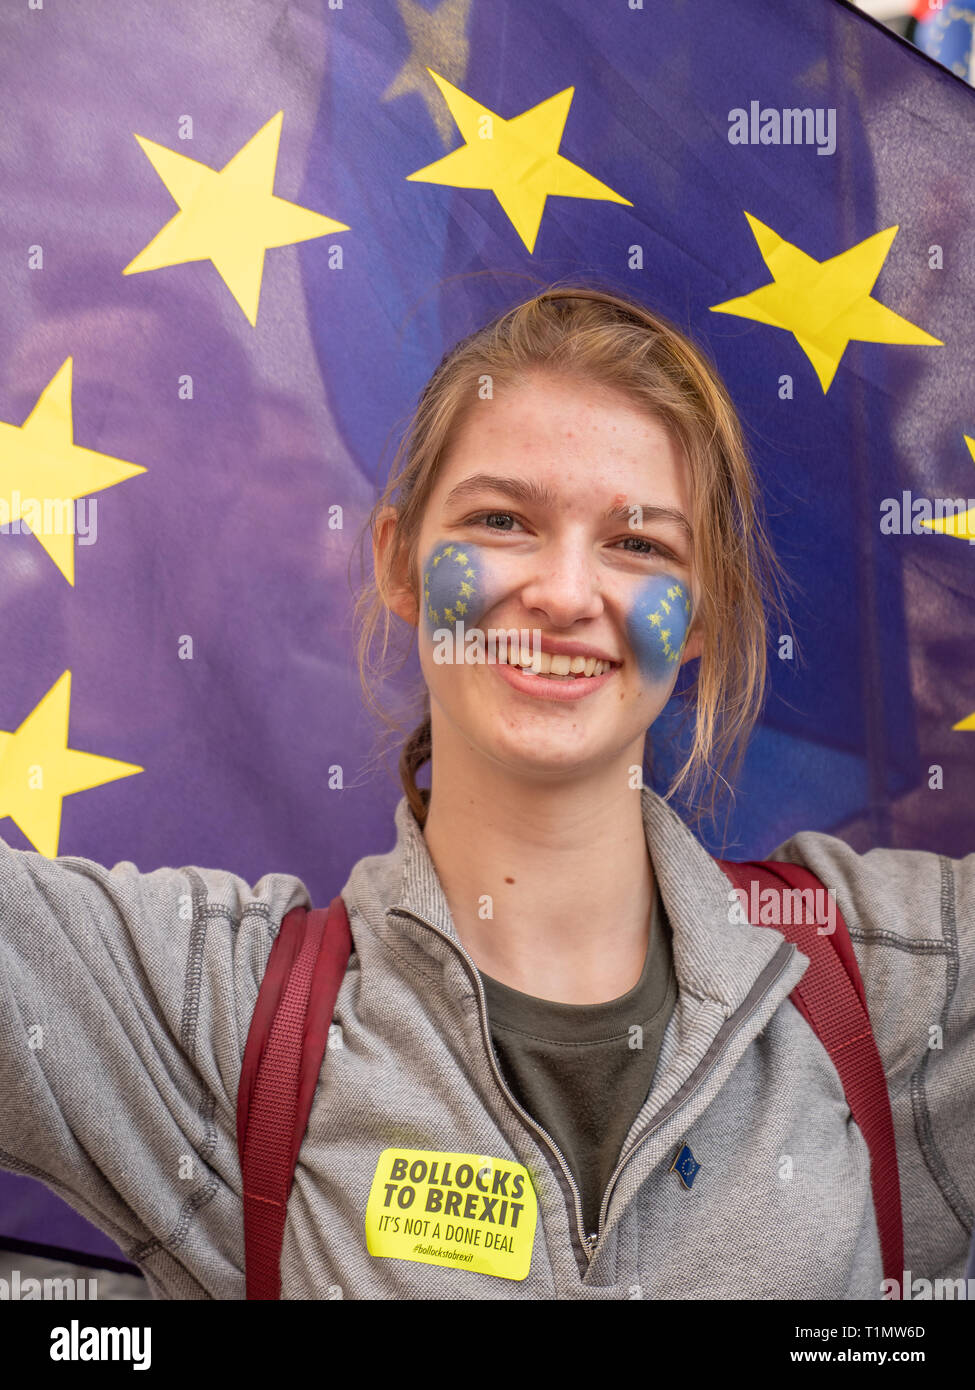 Adolescente sosteniendo la bandera de la Unión Europea en el voto popular de marzo, 23 de marzo de 2019, Londres, Reino Unido. Foto de stock